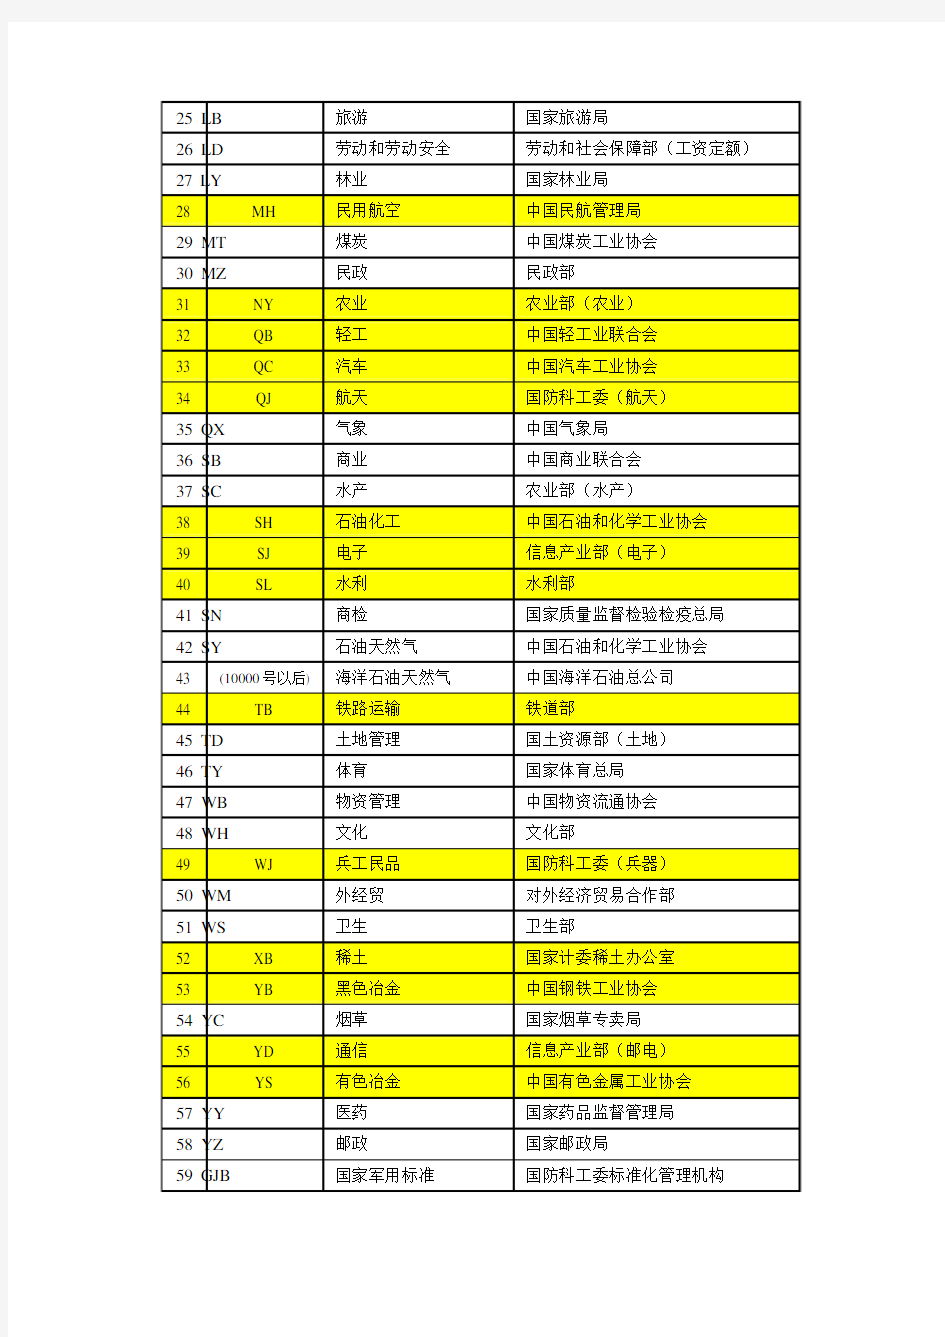 中国标准的几种分类及代号